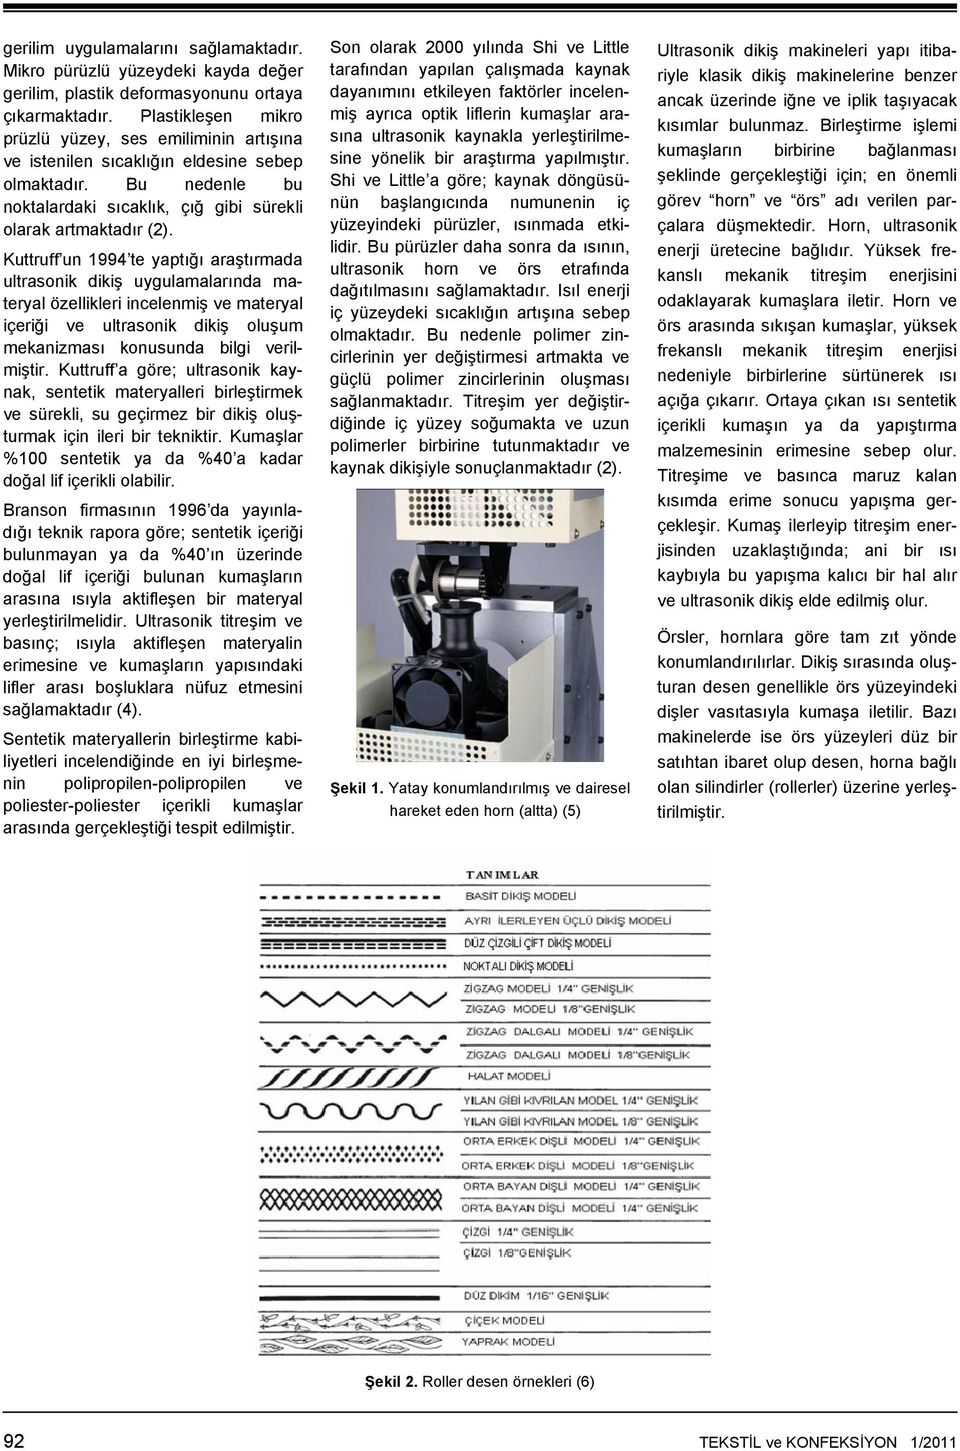 Kuttruff un 1994 te yaptığı araştırmada ultrasonik dikiş uygulamalarında materyal özellikleri incelenmiş ve materyal içeriği ve ultrasonik dikiş oluşum mekanizması konusunda bilgi verilmiştir.